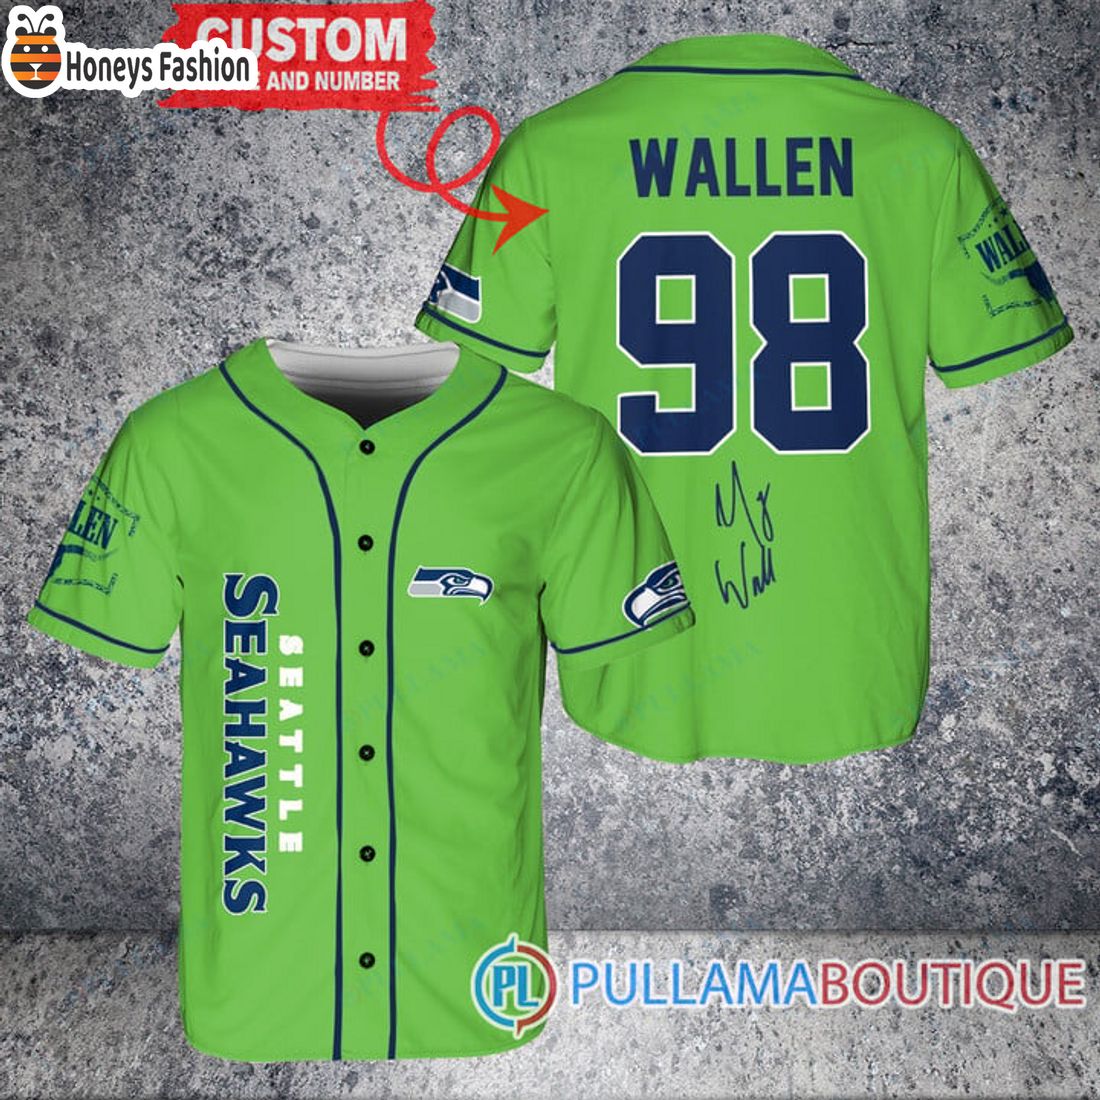 TOP SELLER Morgan Wallen Seattle Seahawks Custom Green Baseball Jersey